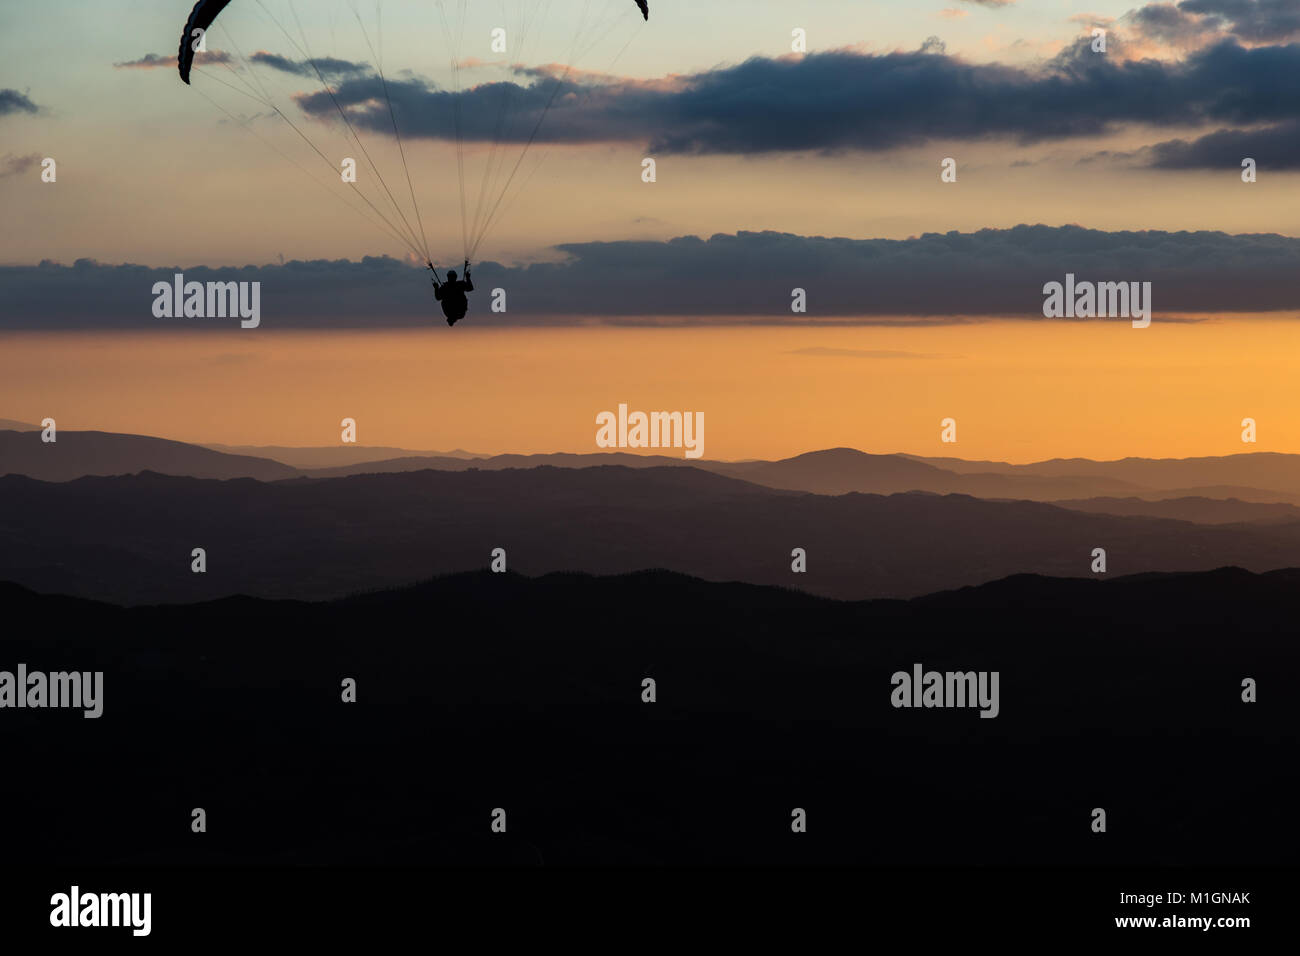 Schöne aufnahme eines Gleitschirms silhouette Fliegen über Monte Cucco (Umbrien, Italien) mit Sonnenuntergang im Hintergrund, mit schönen Farben und dunklen Töne Stockfoto